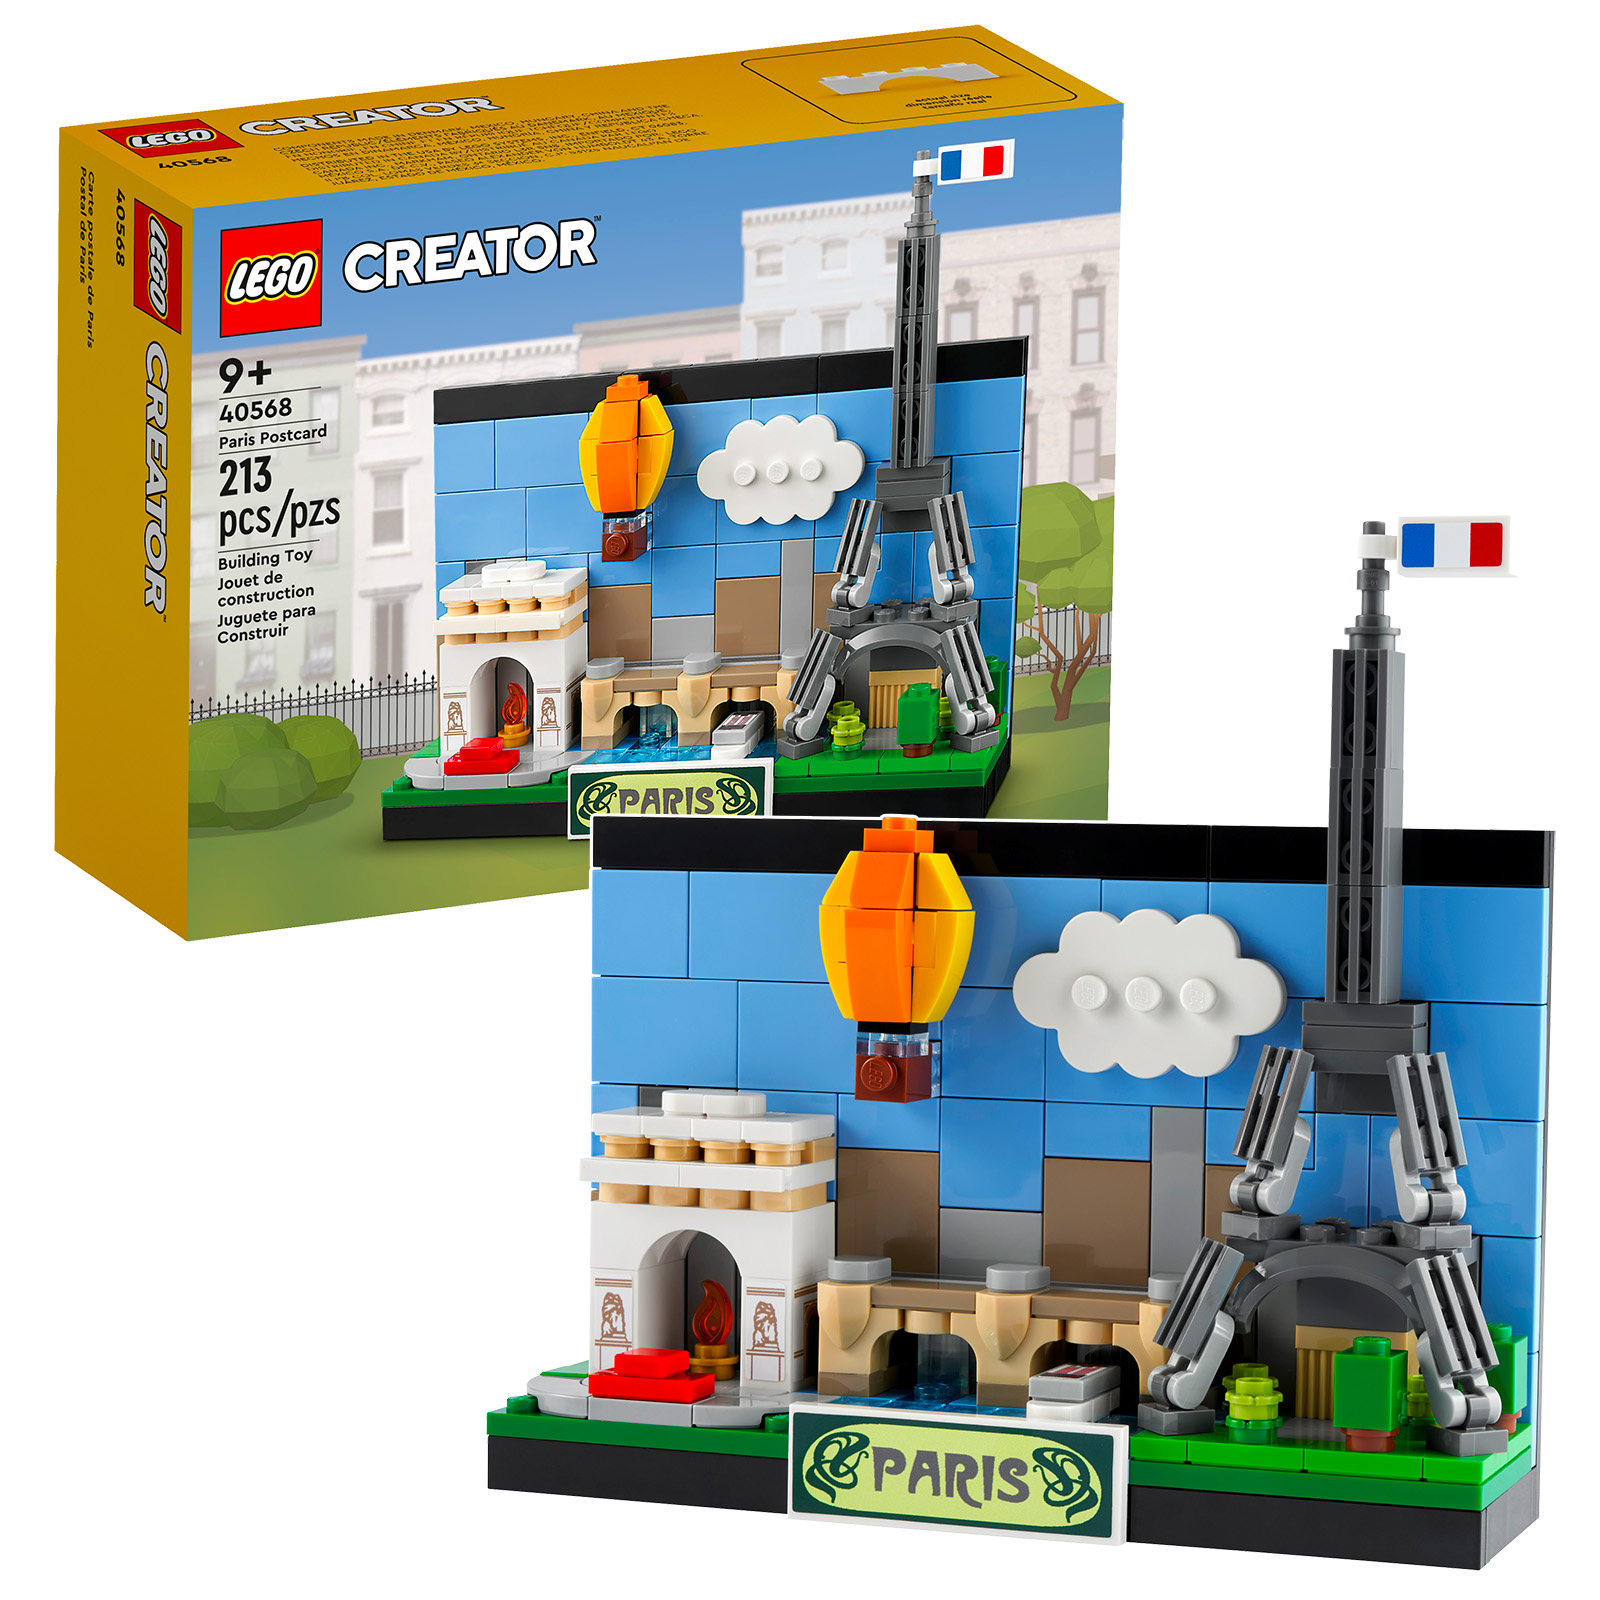 Uued LEGO Creator 2022 väljalasked: 40568 Pariisi postkaart ja 40569 Londoni postkaart